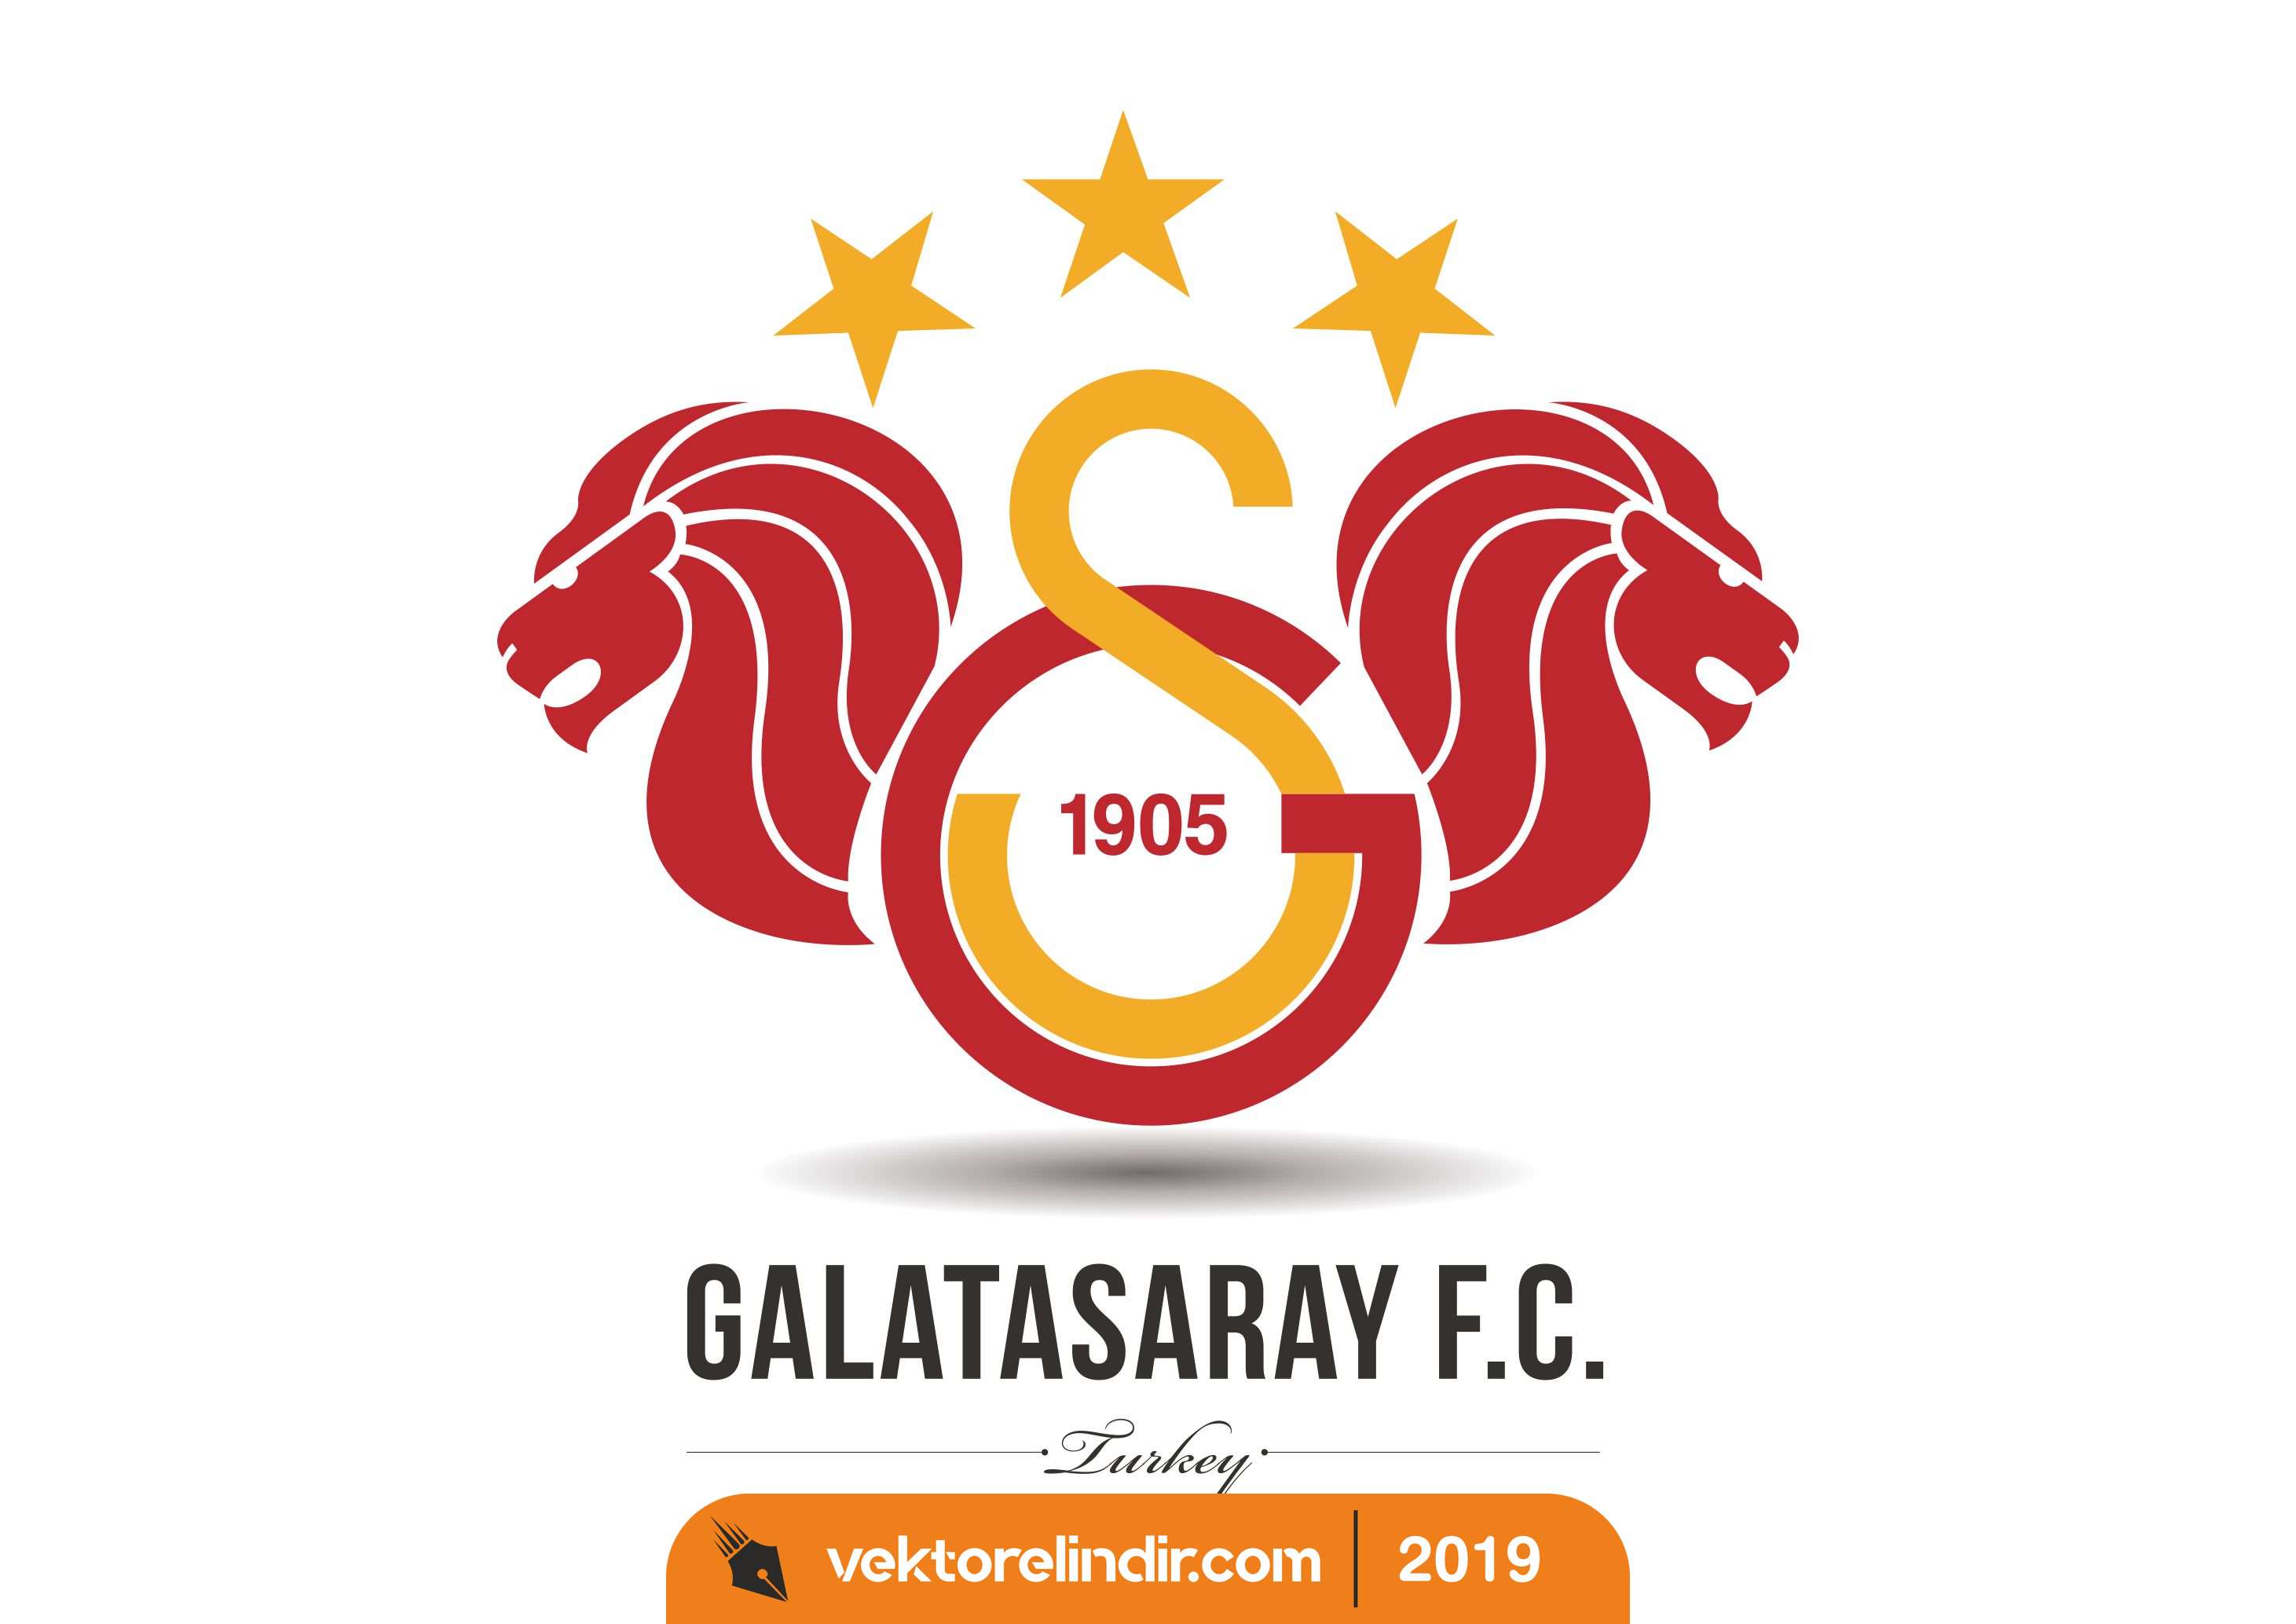 Galasaray Logo, Vektörel, Amblem FC